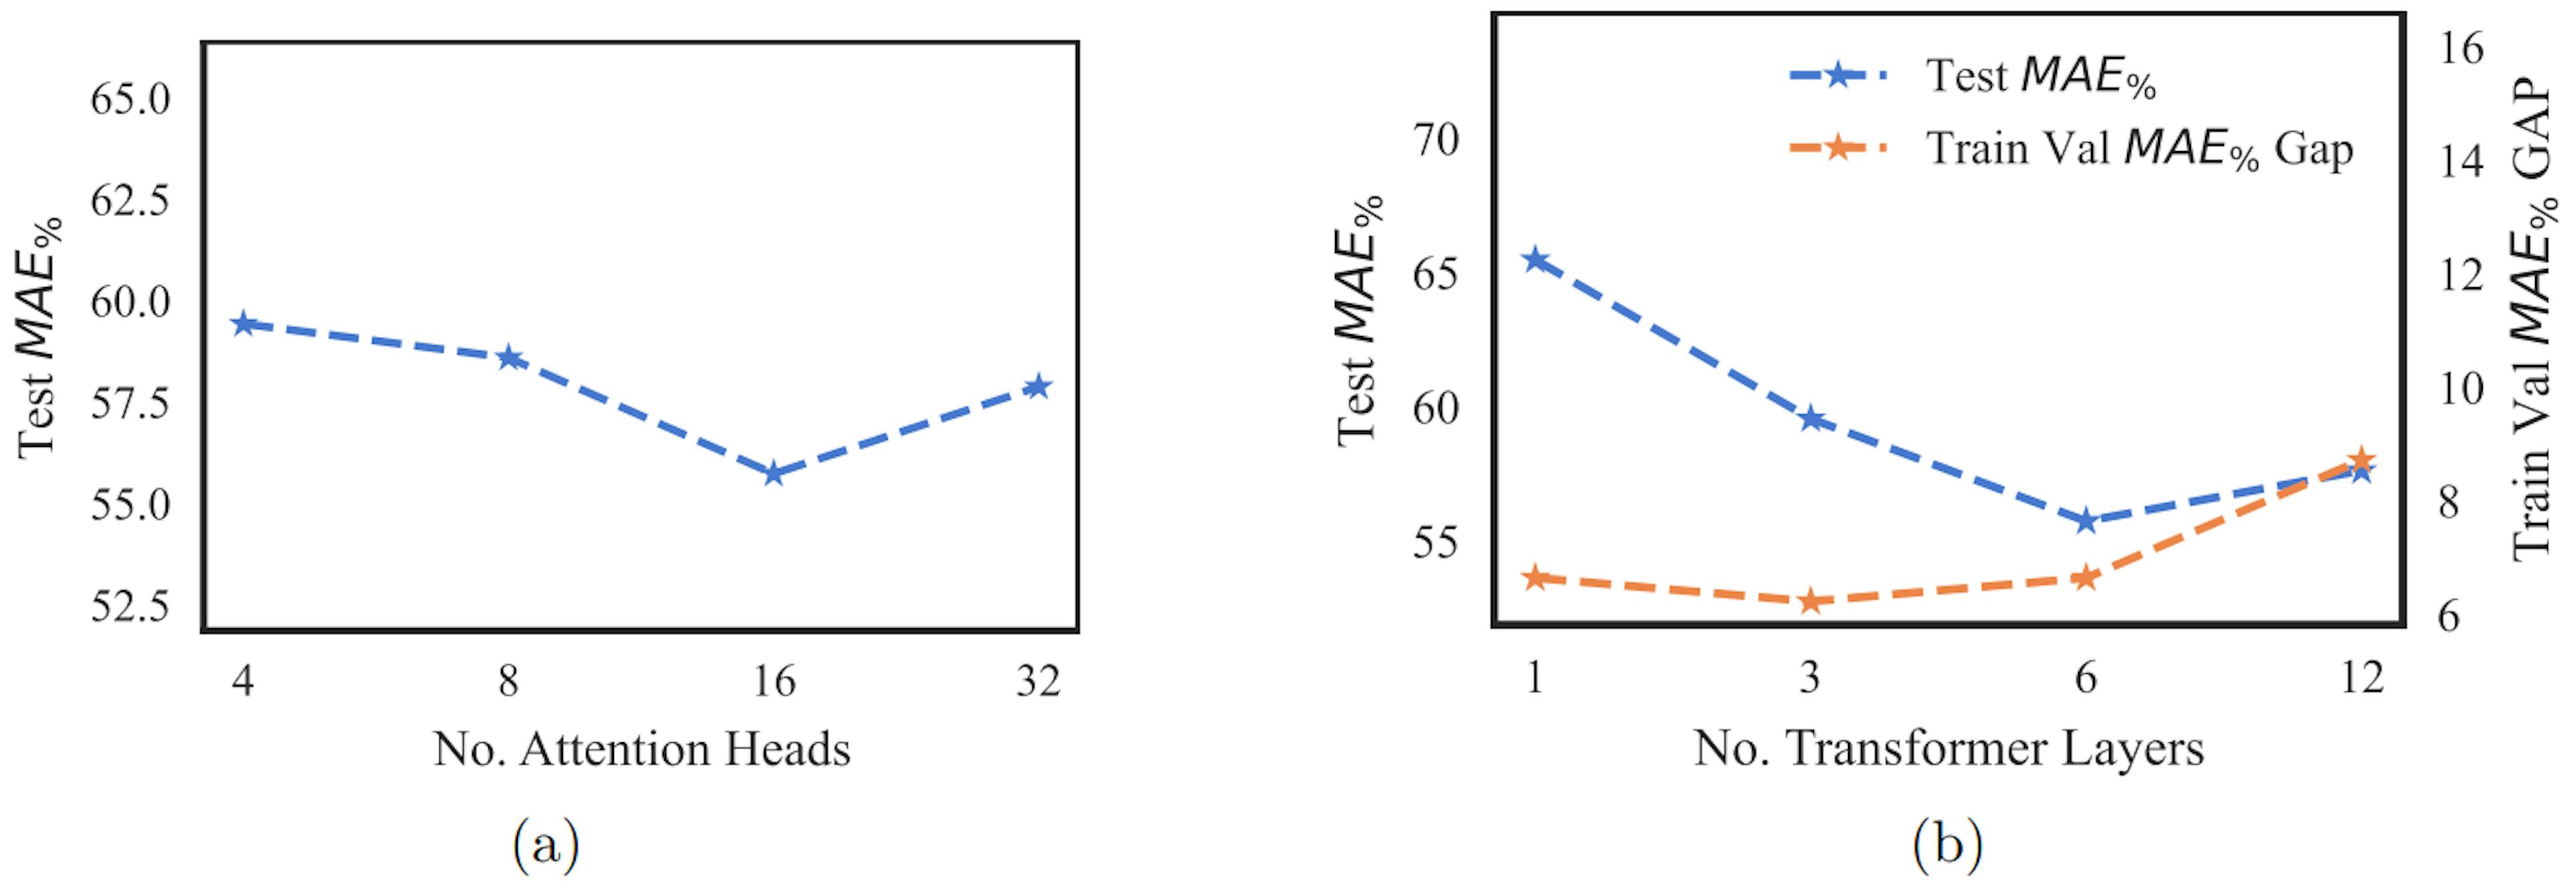 Figura 2: Figura a plota teste MAE% vs número de cabeças de atenção. A Figura b plota o teste MAE% e o intervalo MAE% do trem-val versus o número de camadas do transformador. MAE% é calculado conforme mostrado na Equação 4.